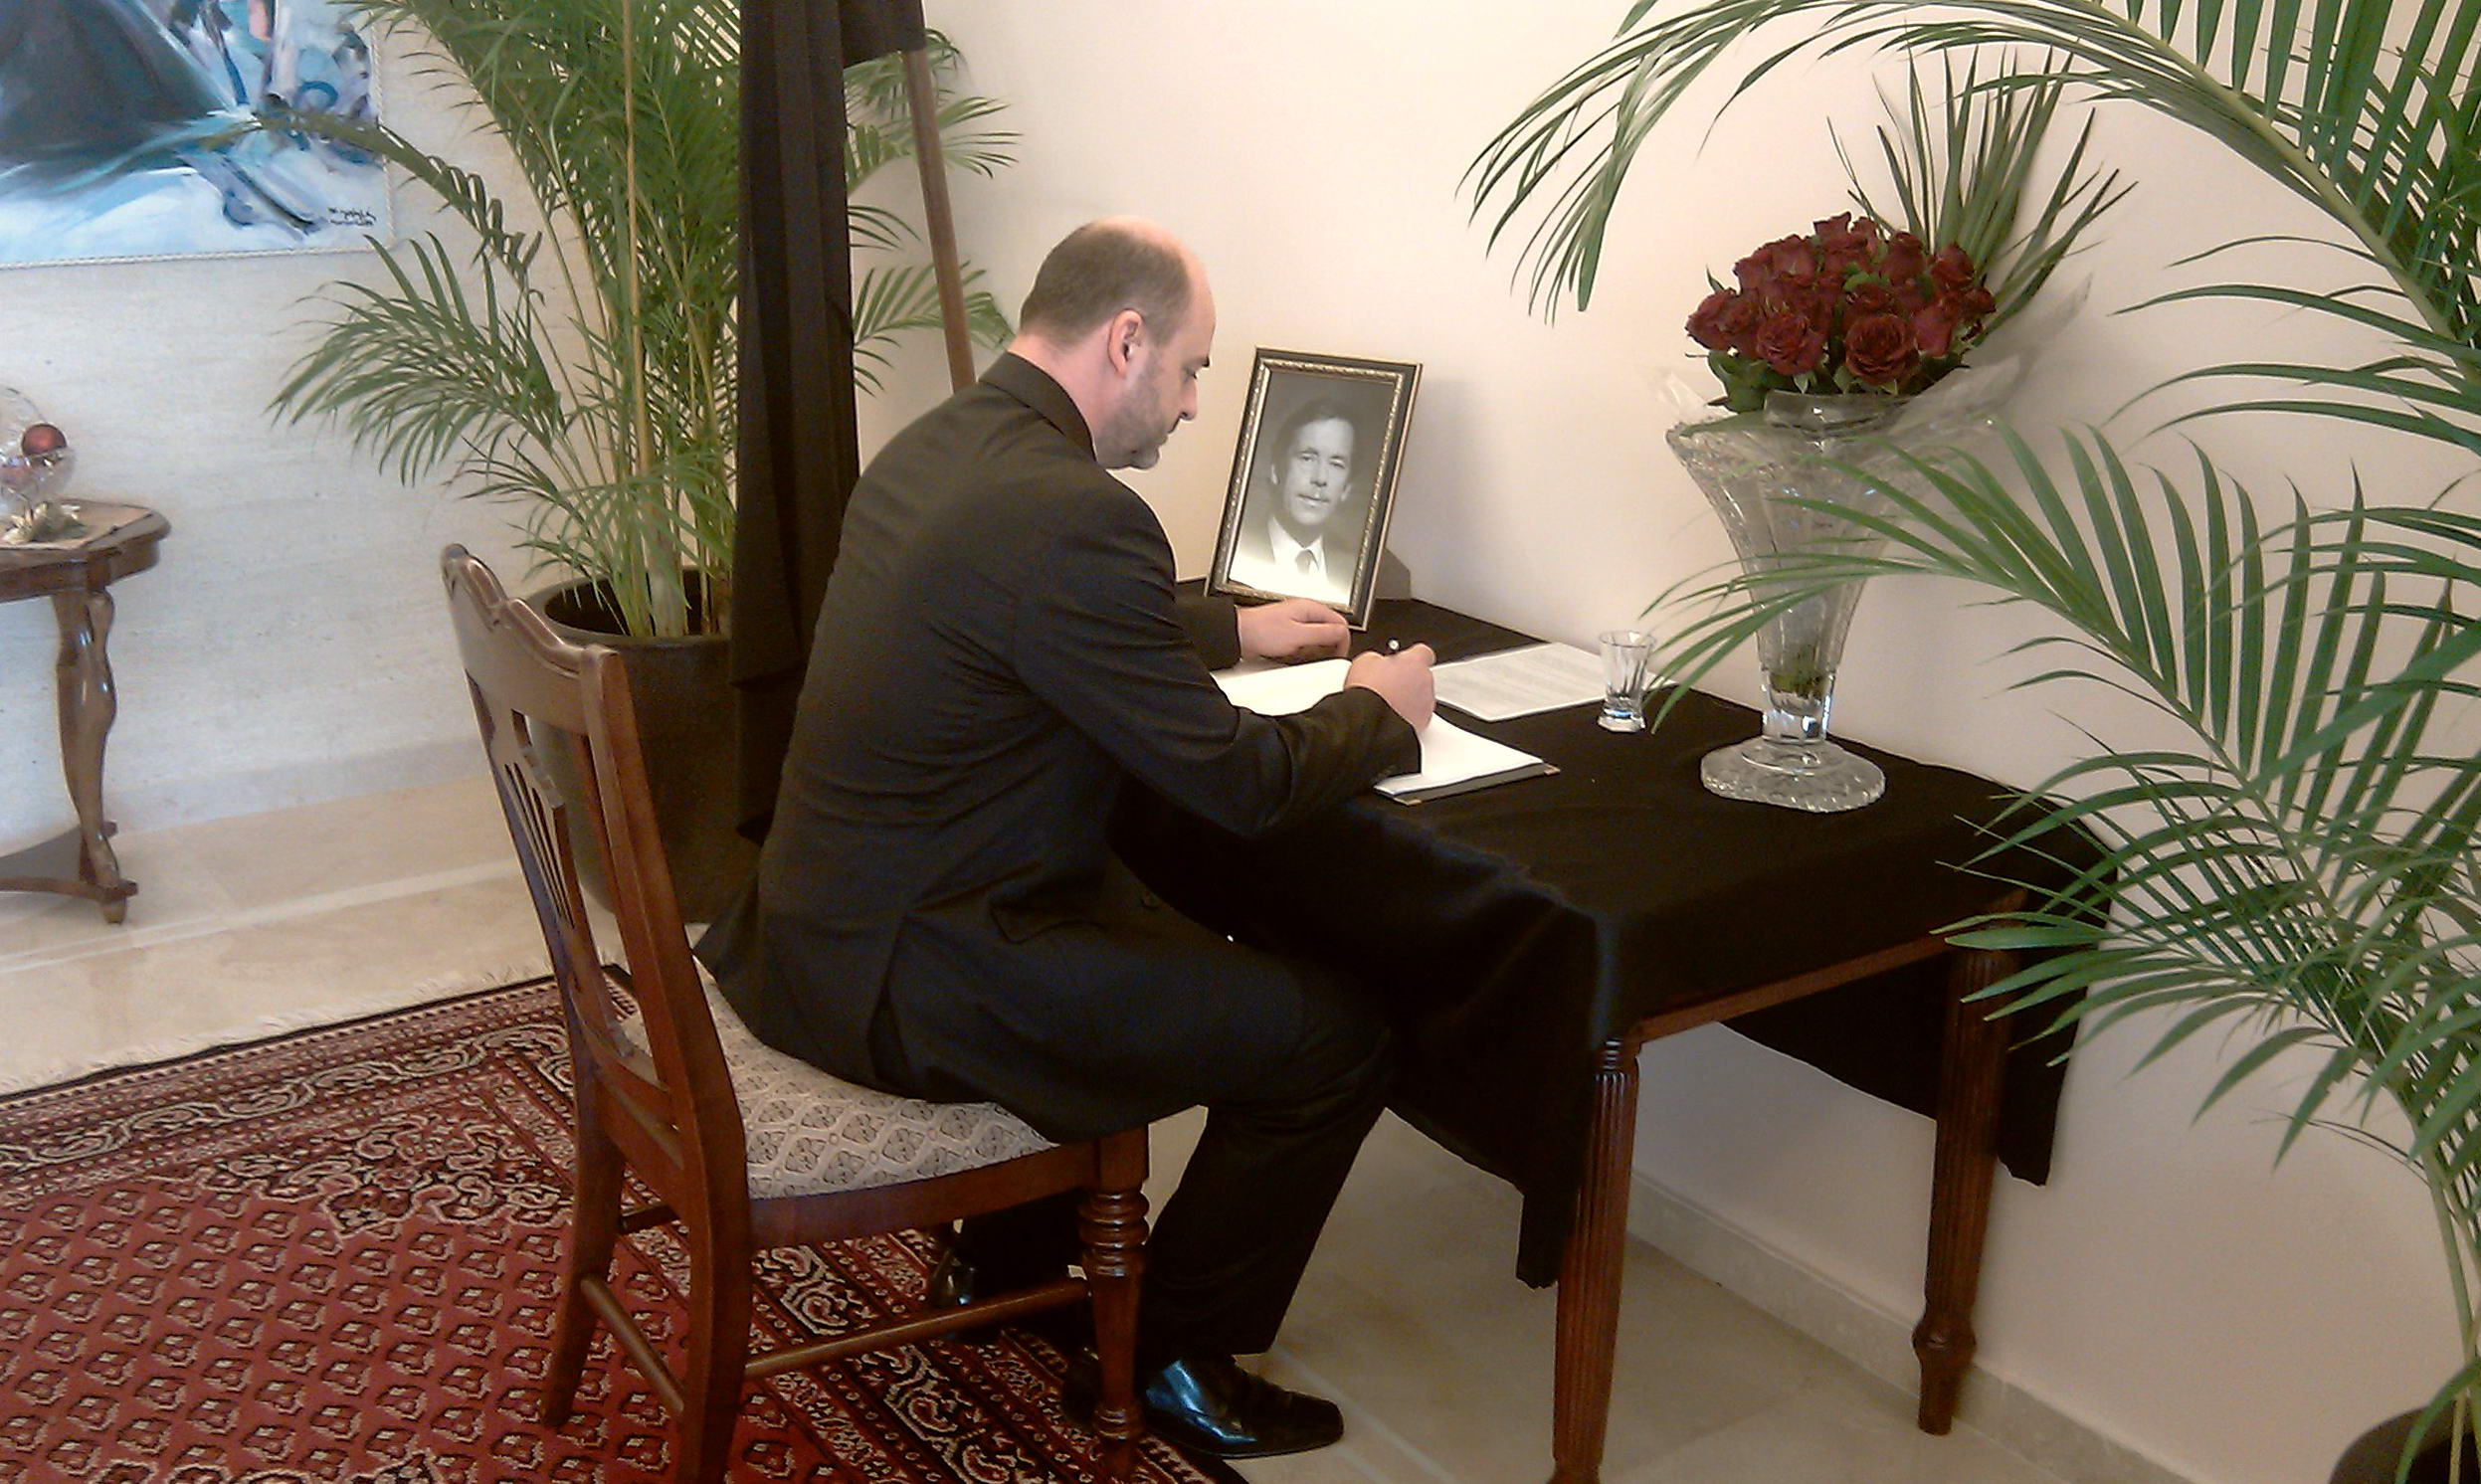 velvyslanec Svatopluk Čumba podepisuje kondolenční knihu